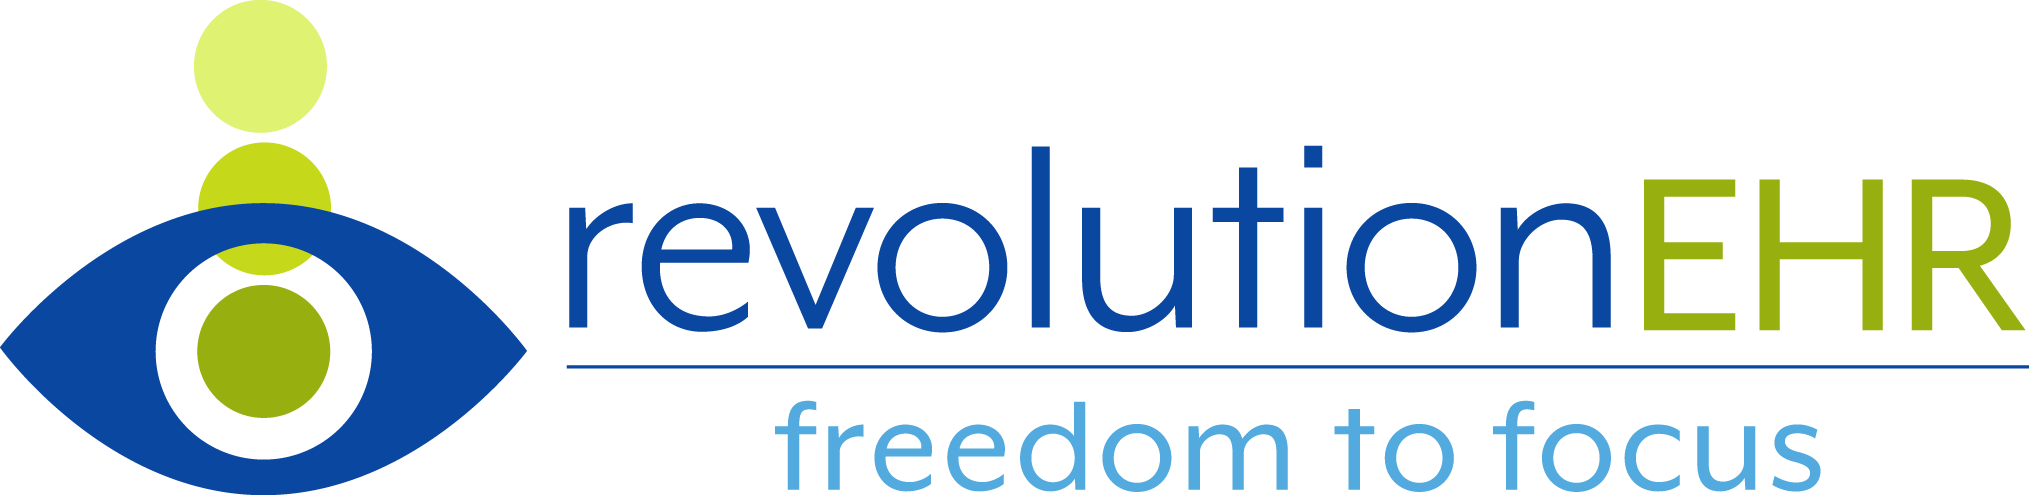 RevolutionEHR | Freedom to Focus